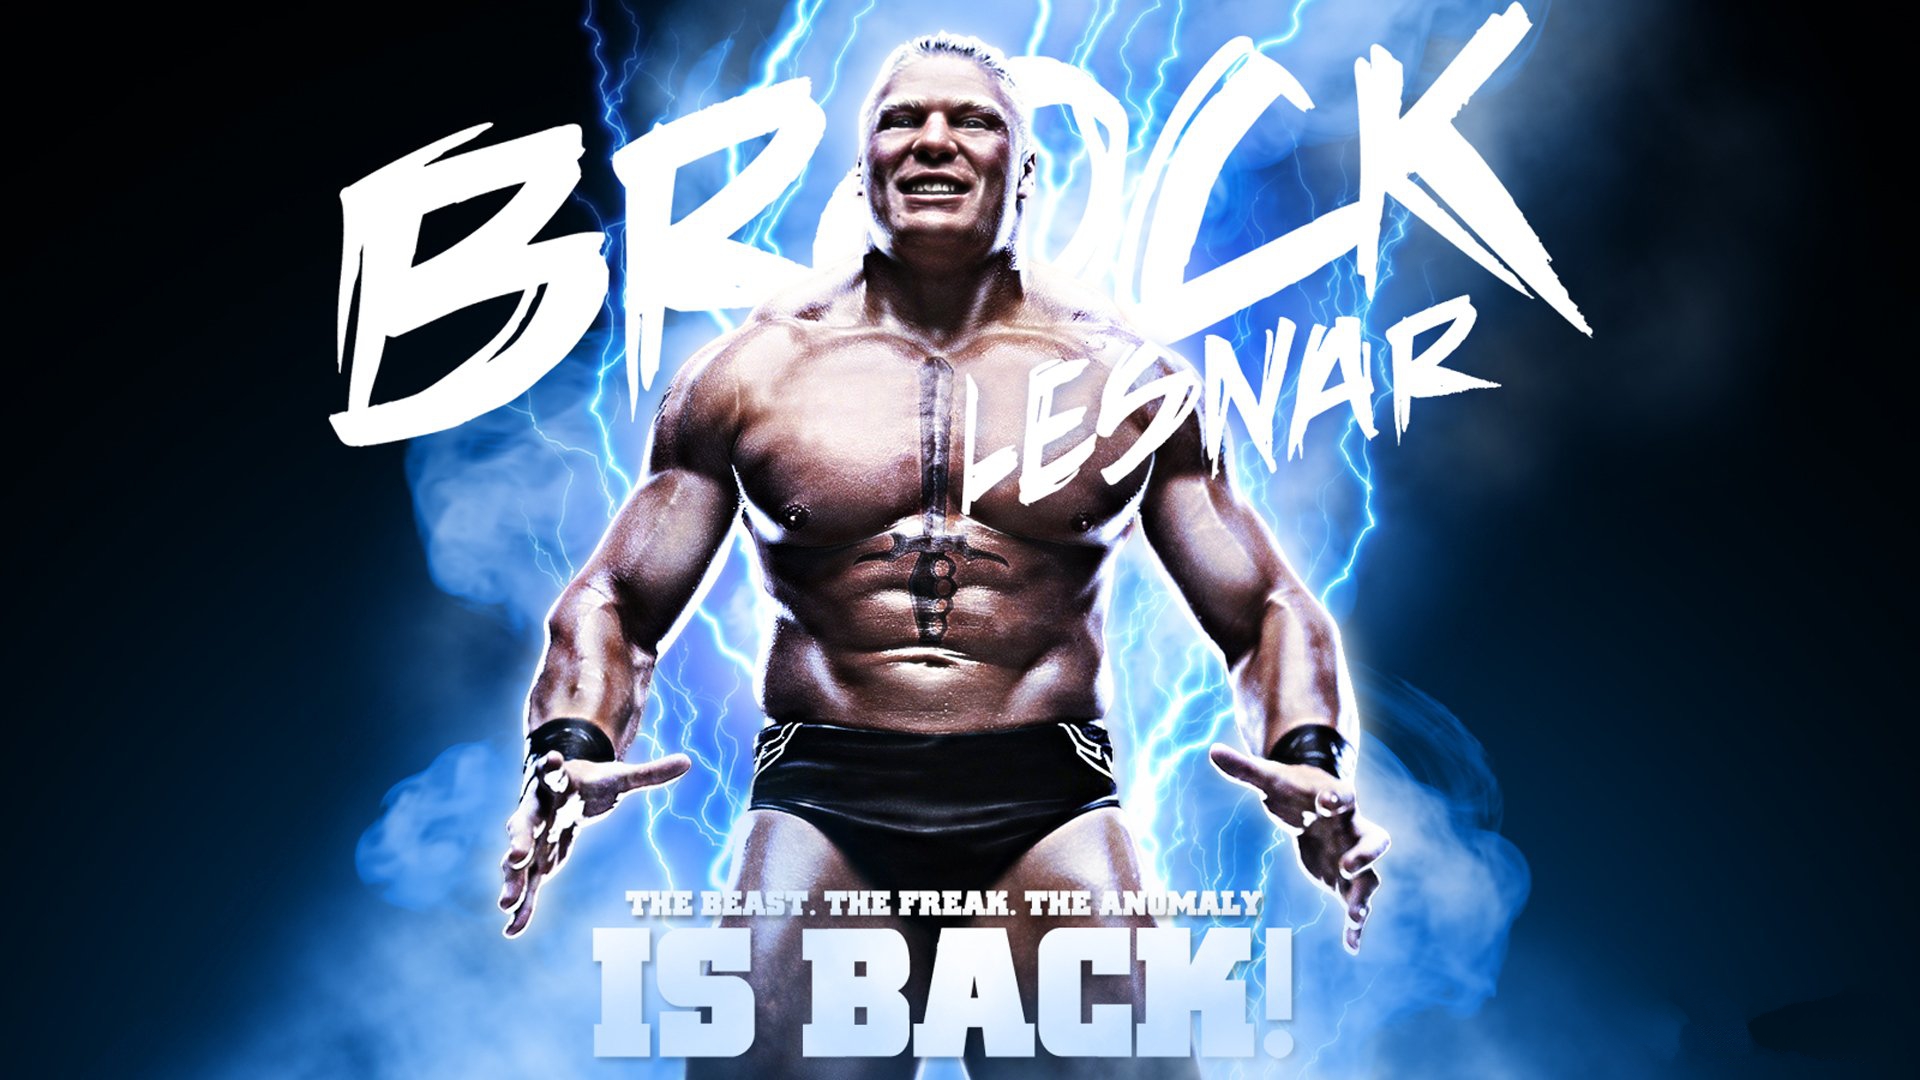 Wwe Superstars Brock Lesnar - HD Wallpaper 